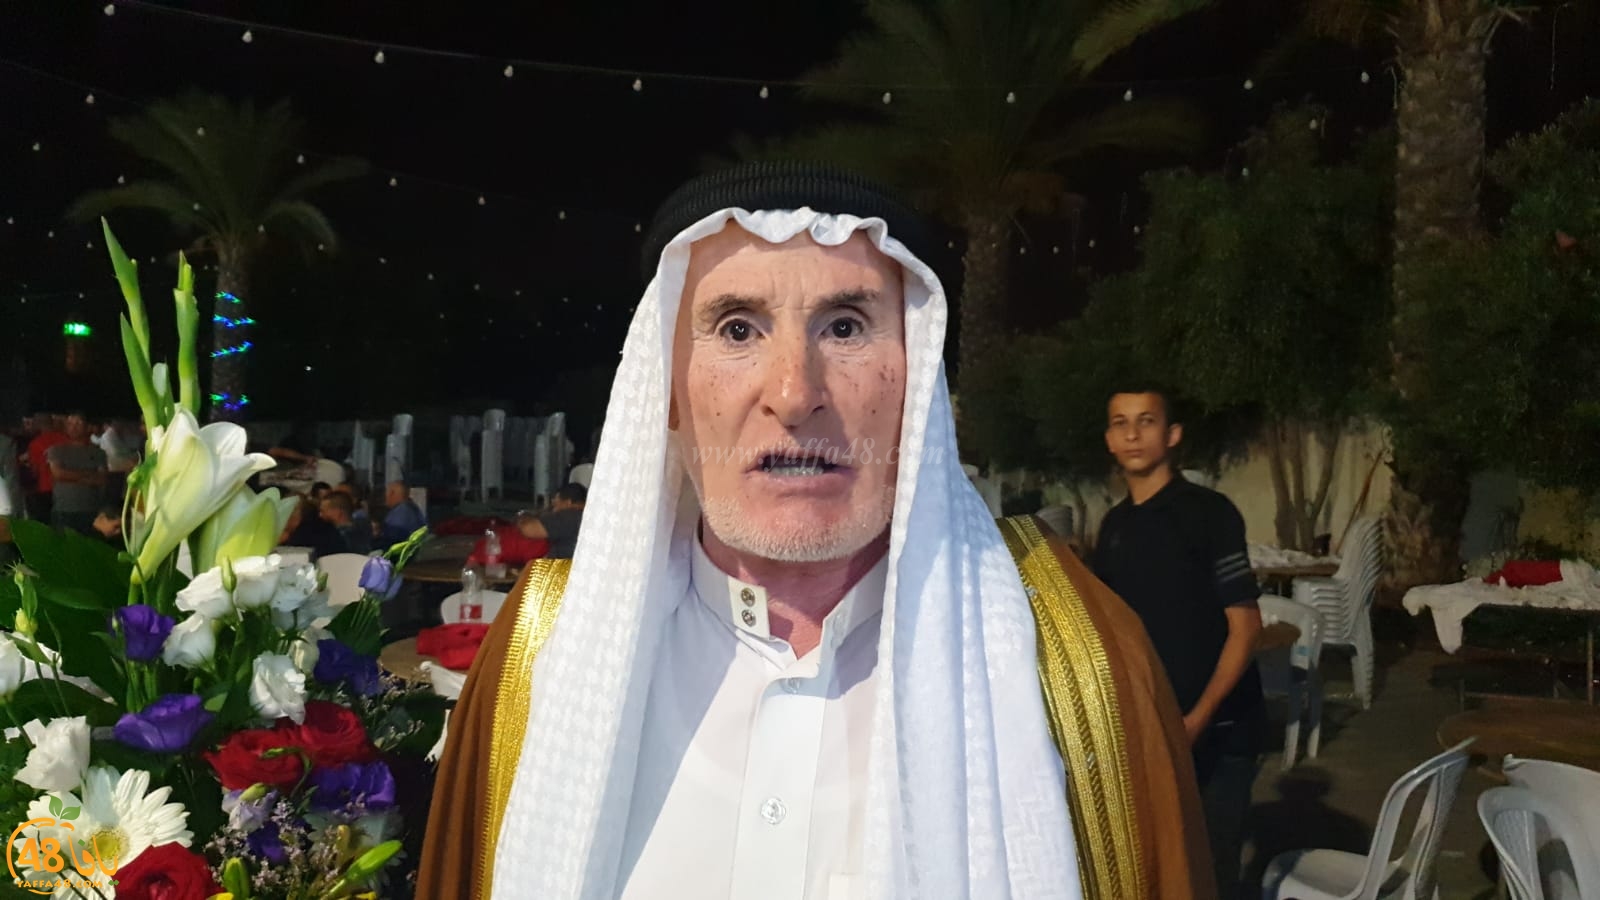   اجتماعيات - بالفيديو: حفل زفاف العريس سالم نايف ابو صويص في الرملة 